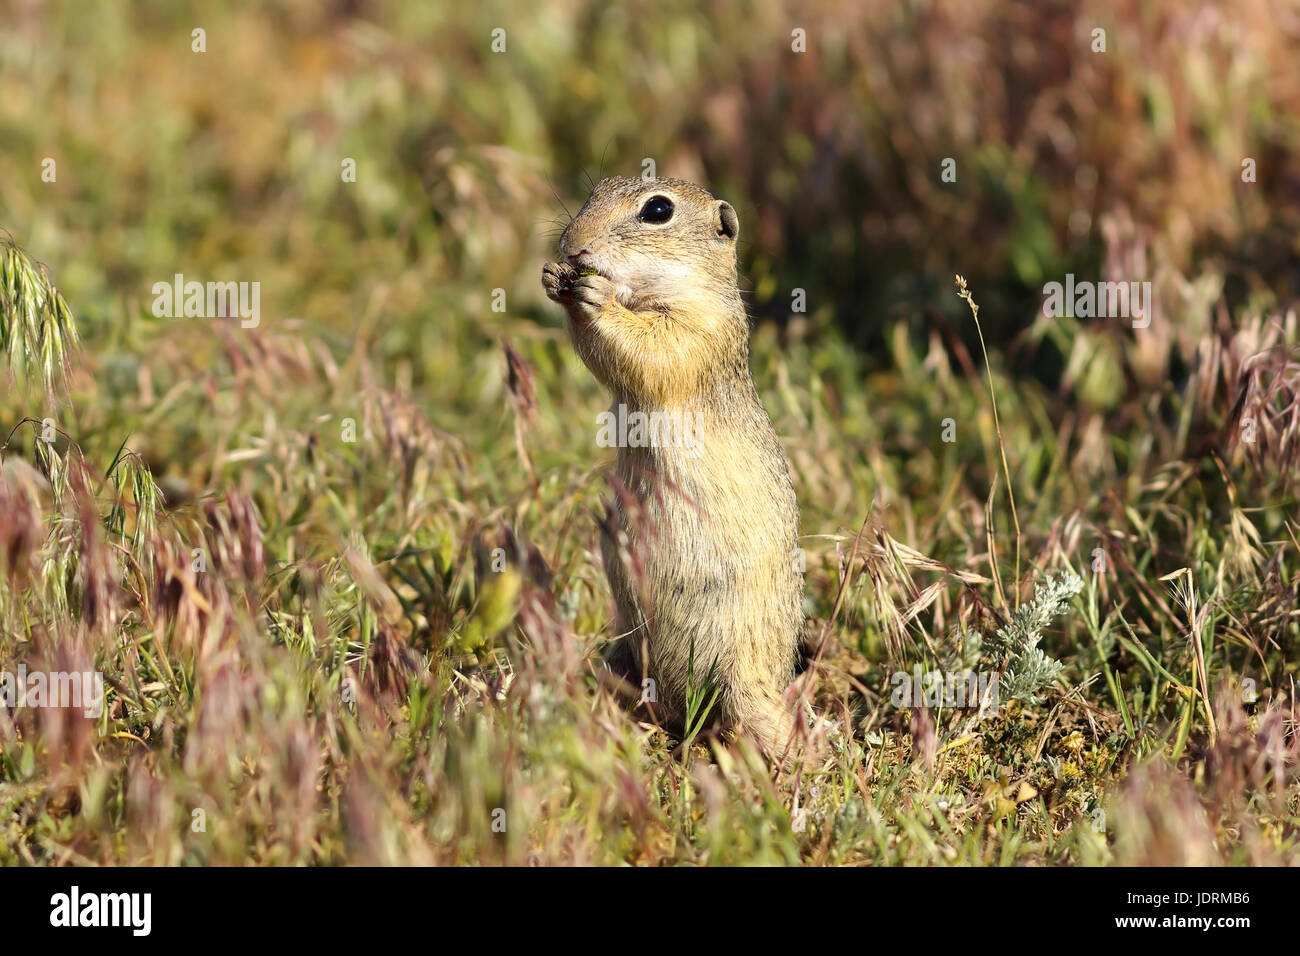 Terreno europeo scoiattolo sul prato, immagine presa mentre mangia ( Spermophilus citellus ) Foto Stock